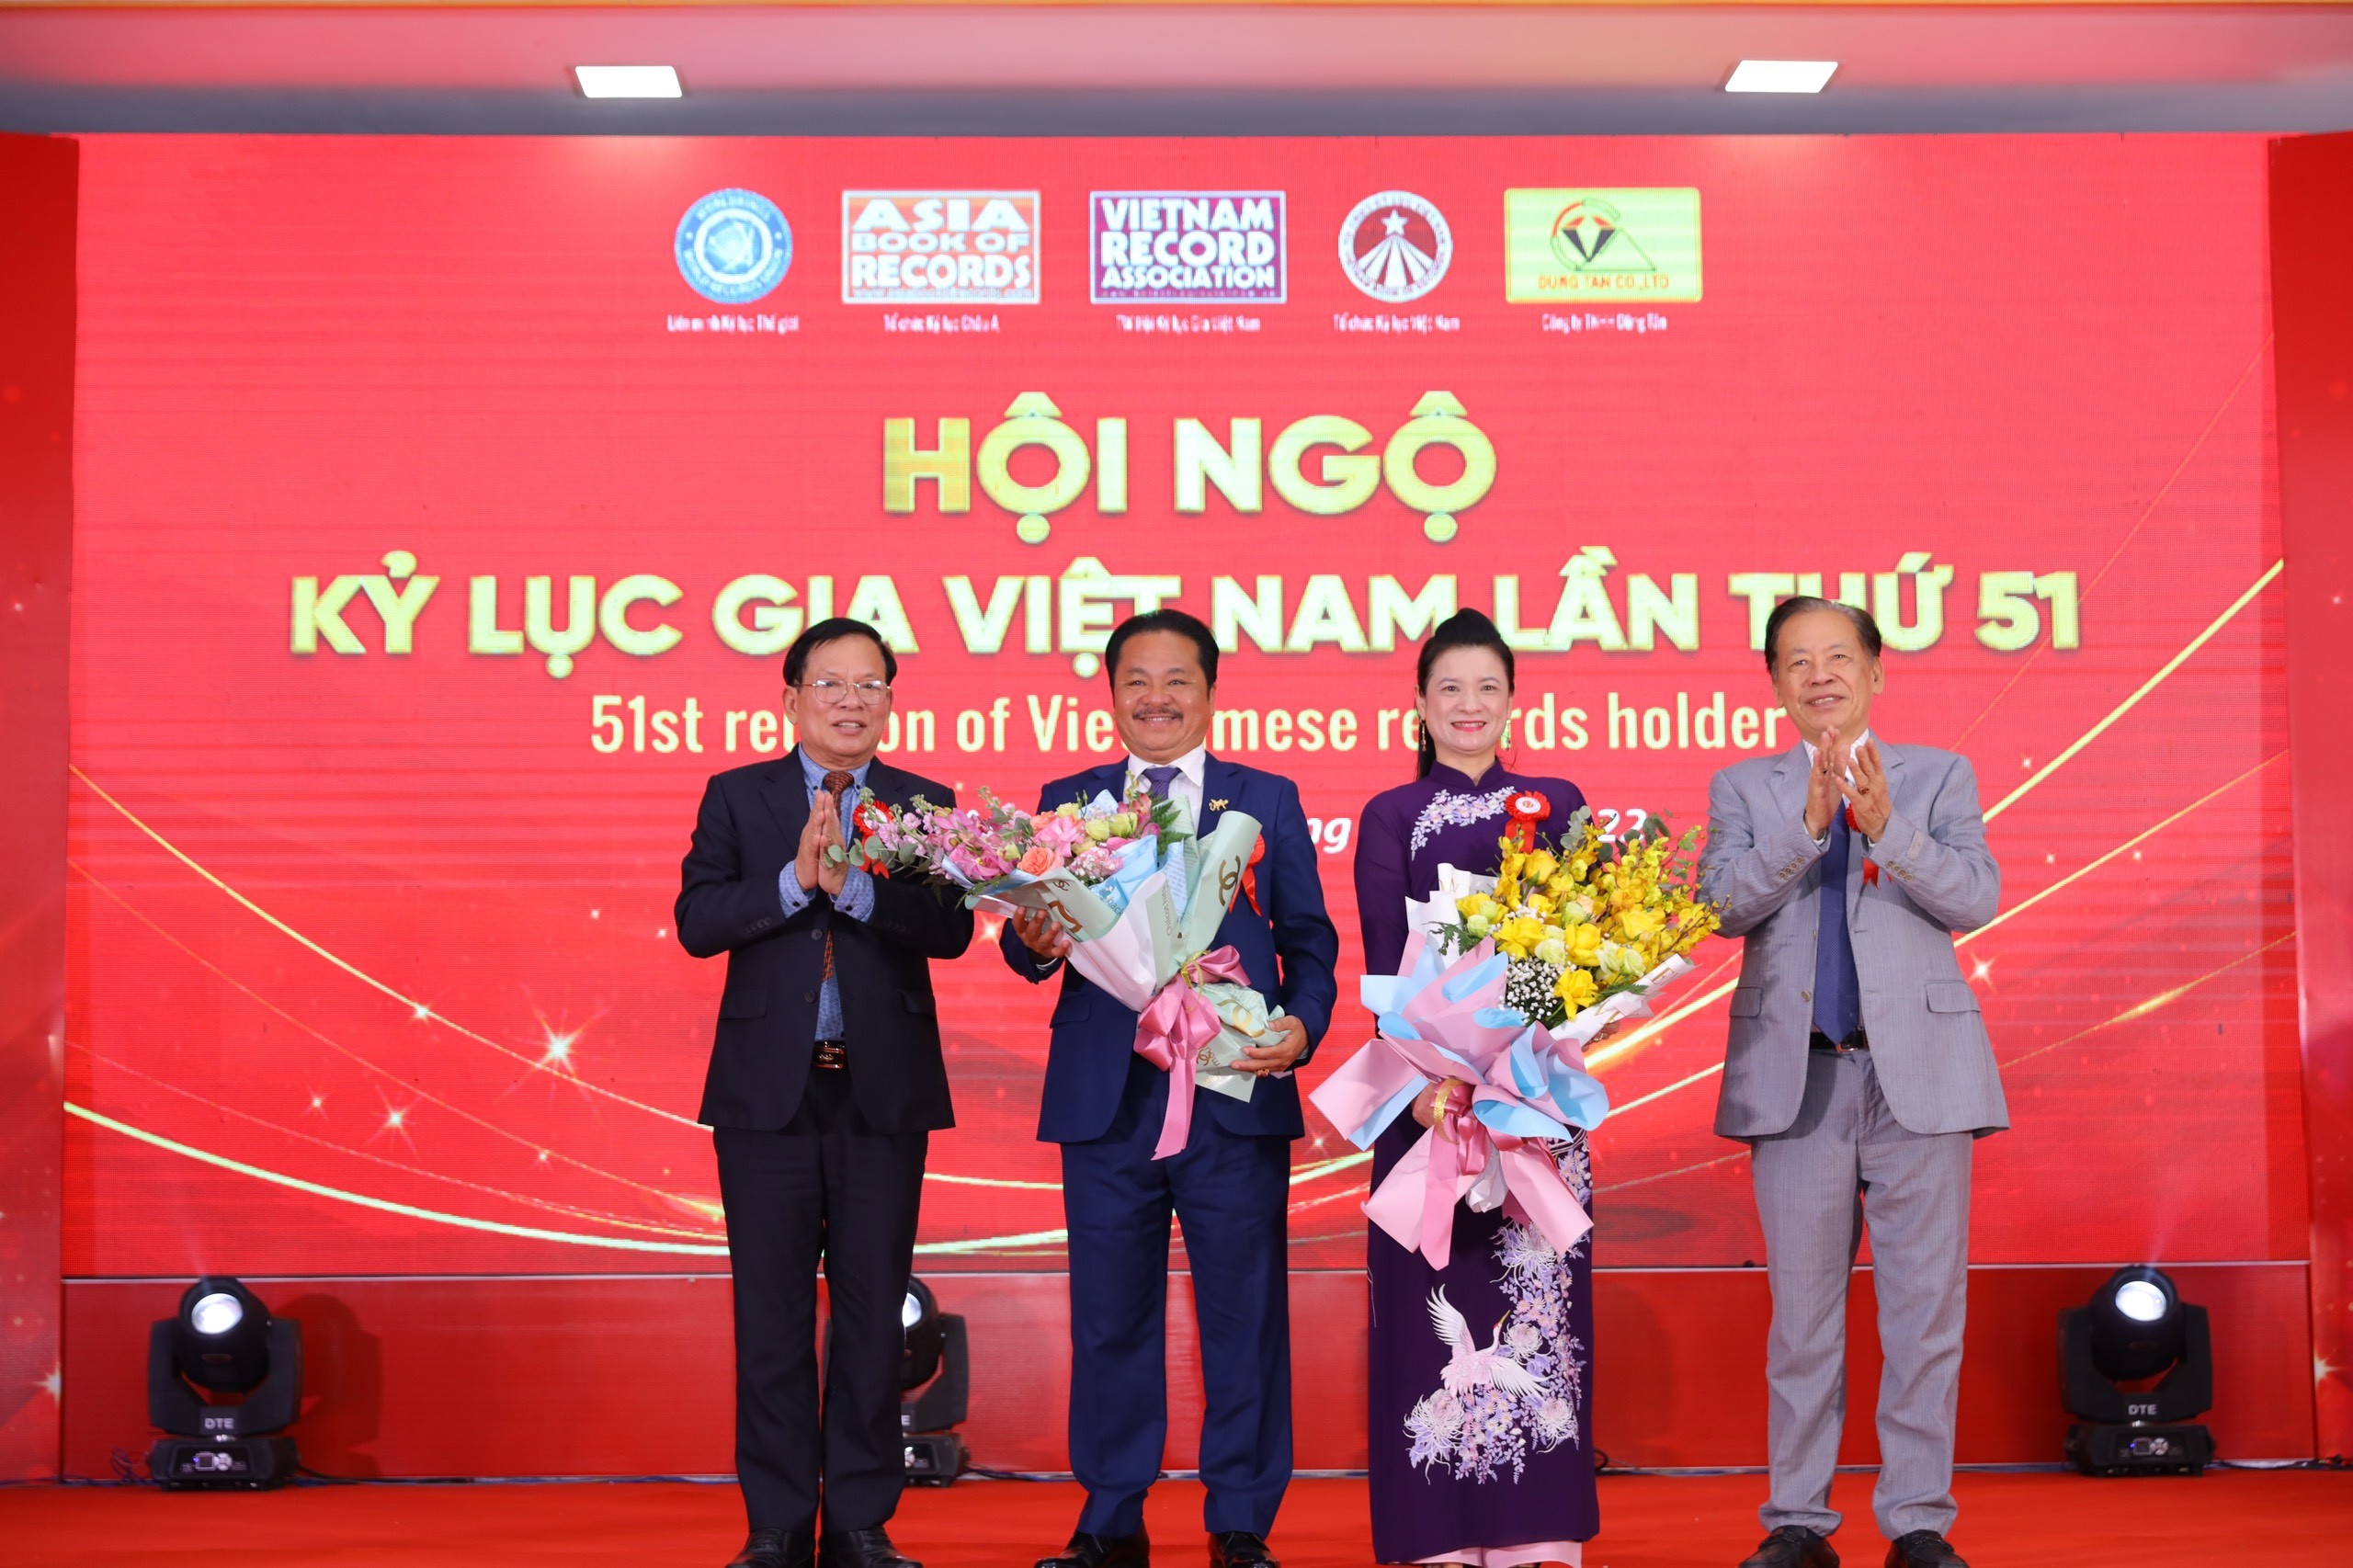 "Hội ngộ Kỷ lục gia Việt Nam lần 51" vinh danh các giá trị và thành tựu mới